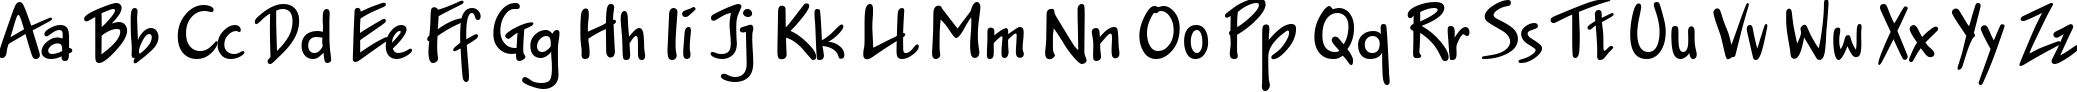 Пример написания английского алфавита шрифтом Jakob DP Normal